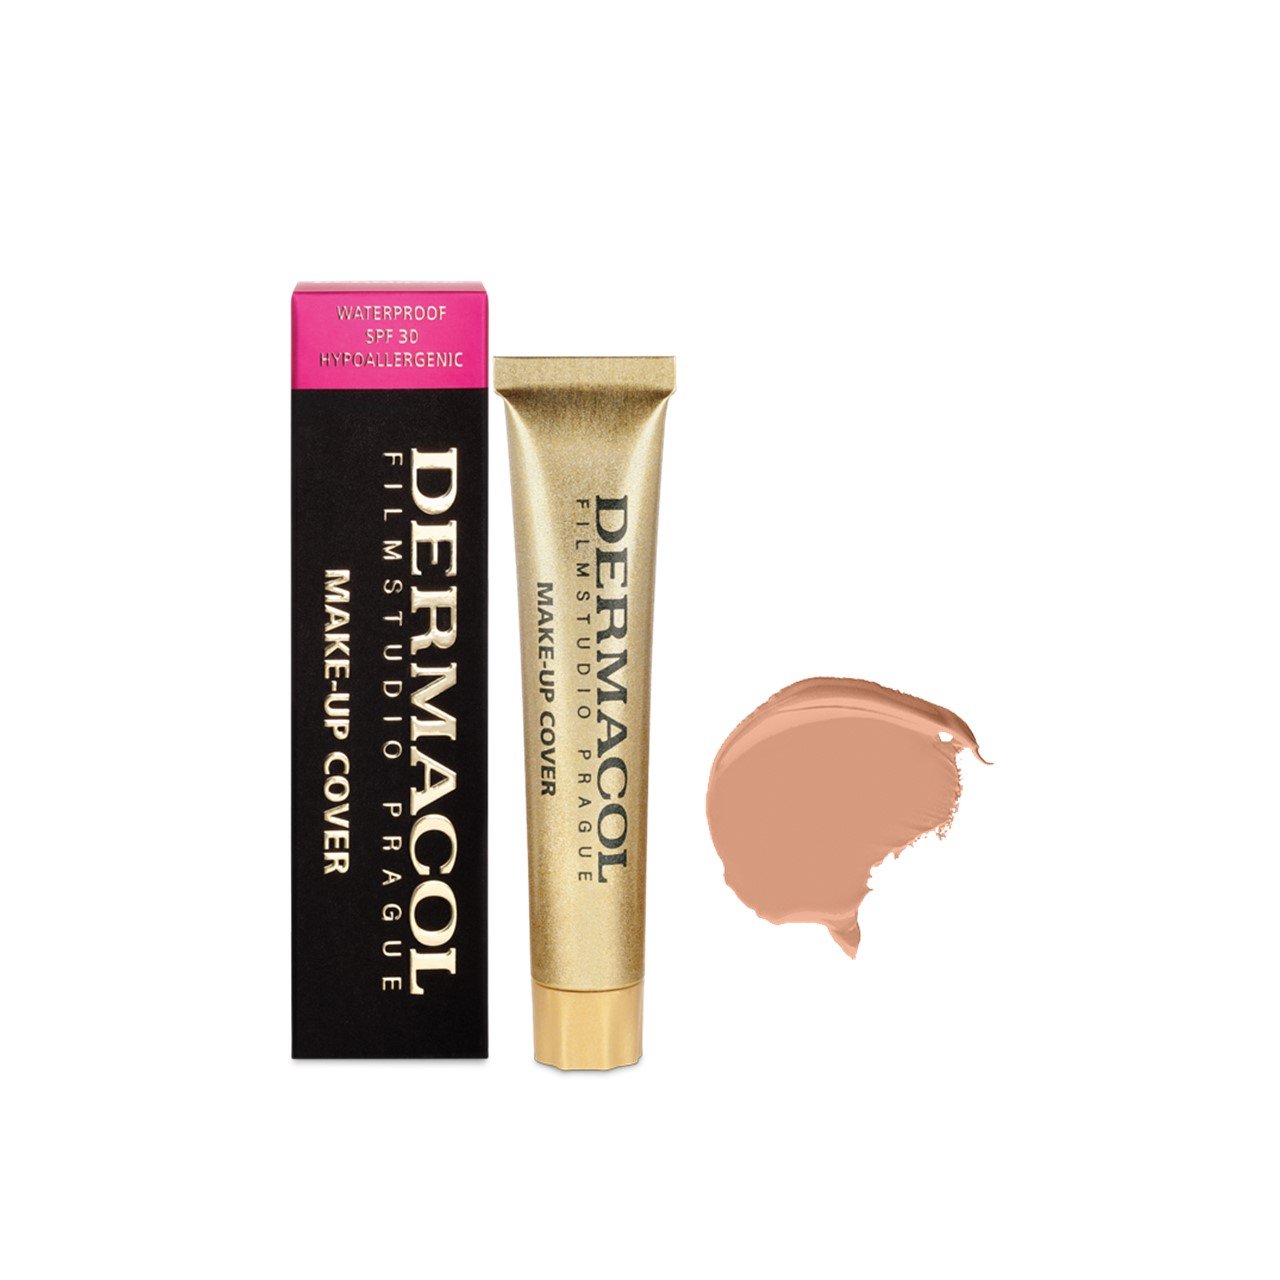 Dermacol Make-Up Cover Foundation SPF30 213 30g (1.06oz)